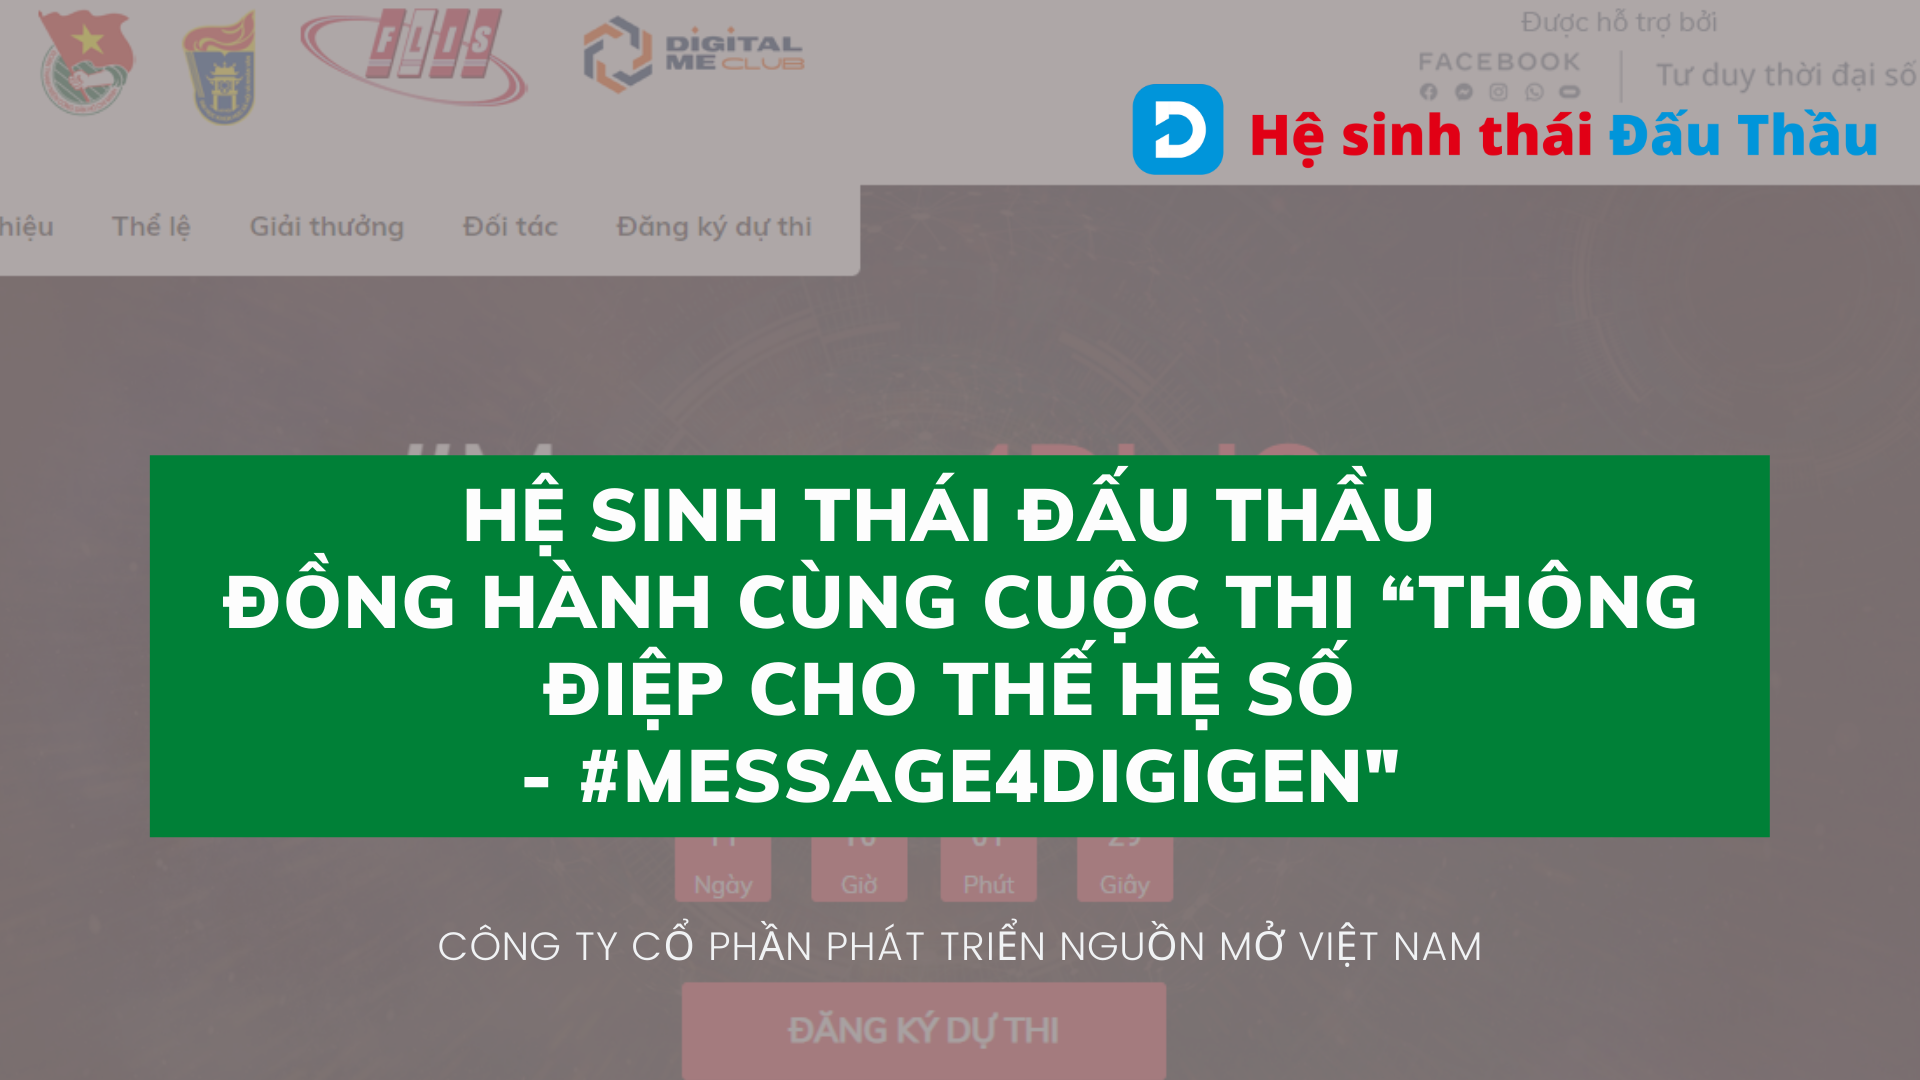 Hệ sinh thái Đấu Thầu đồng hành cùng cuộc thi “Thông điệp cho thế hệ số - #Message4DigiGen" được tổ chức bởi Đại học Quốc gia Hà Nội